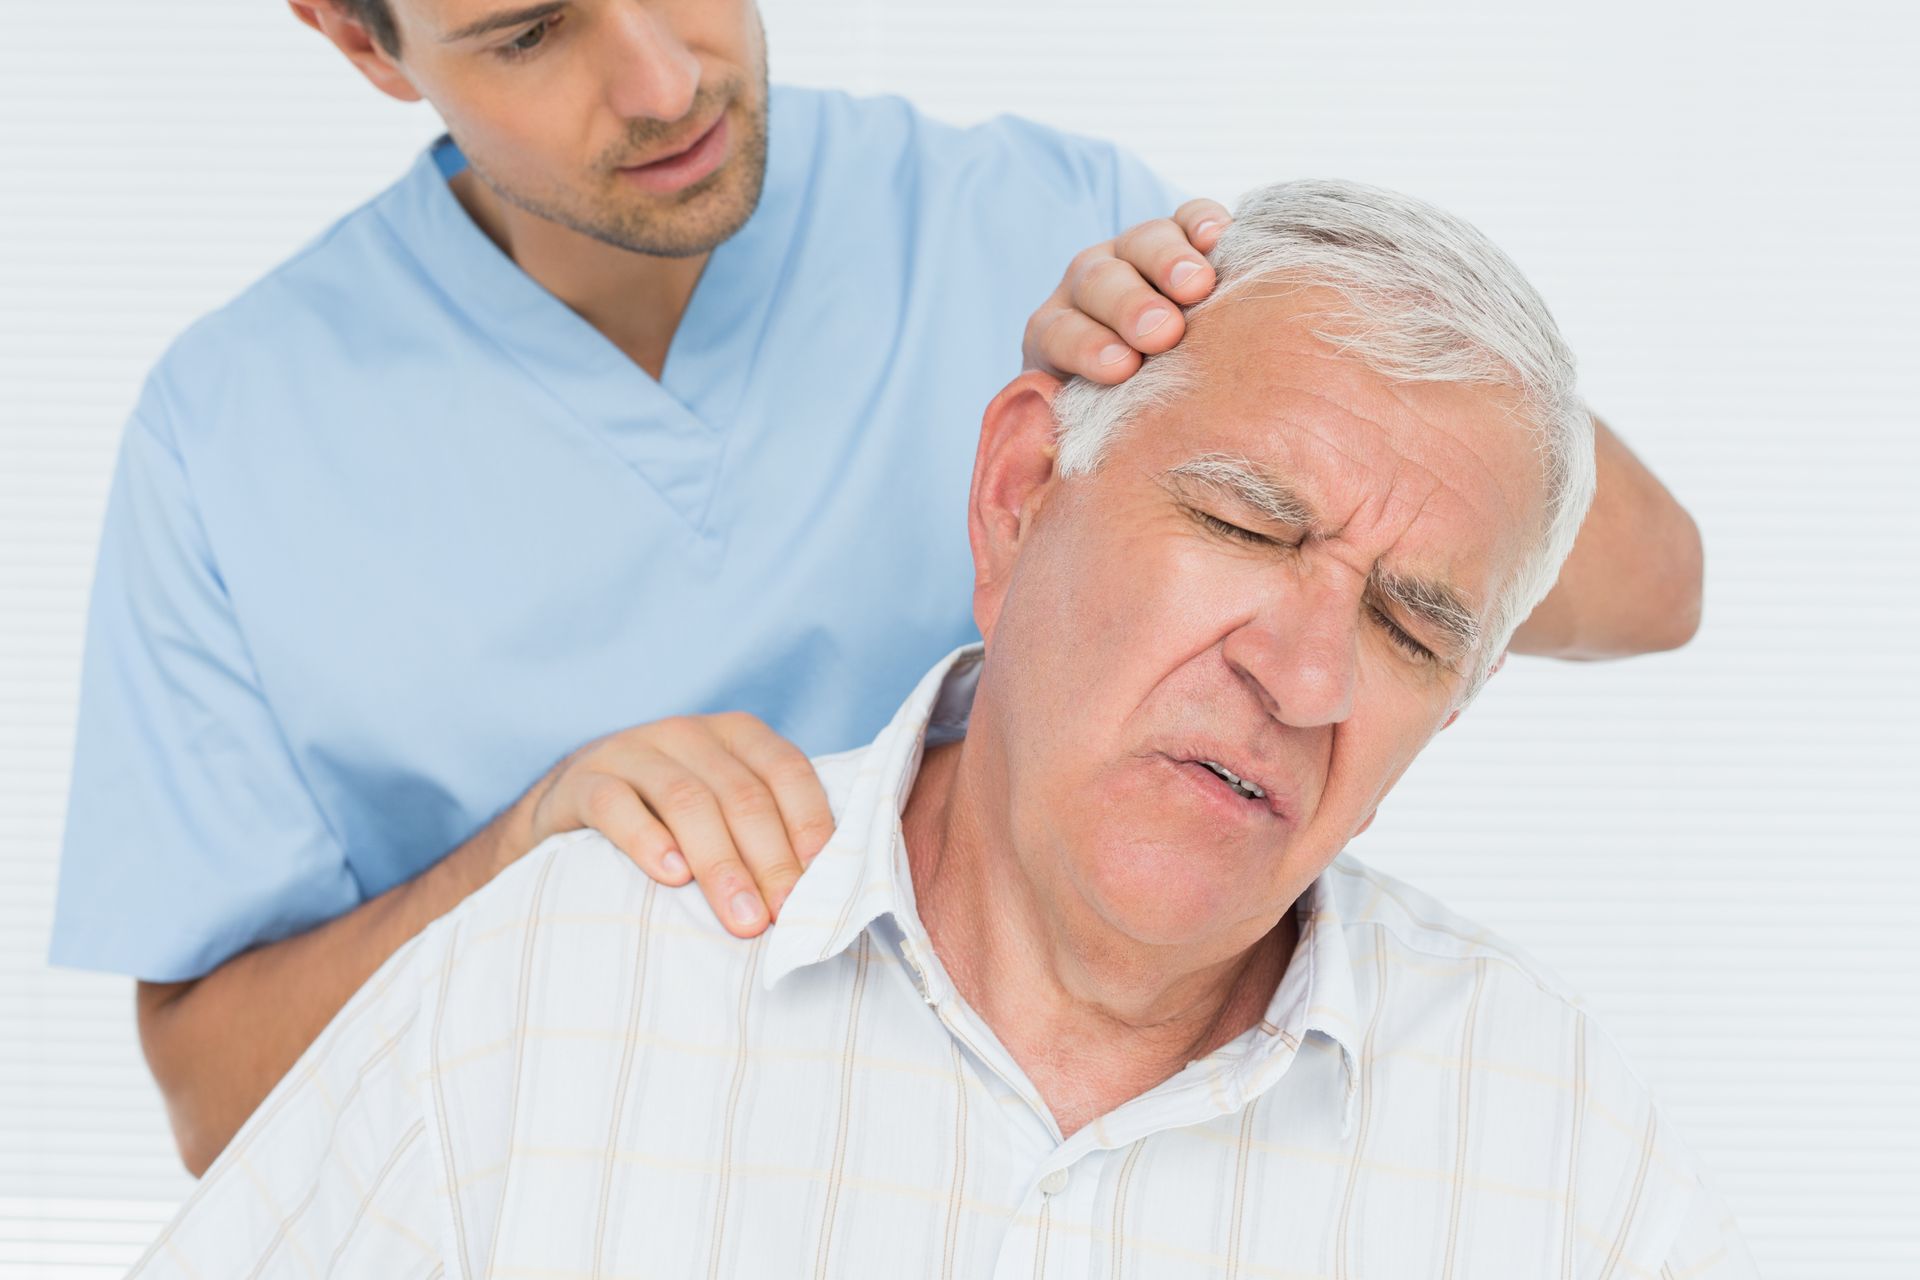 A man is giving an older man a neck massage.